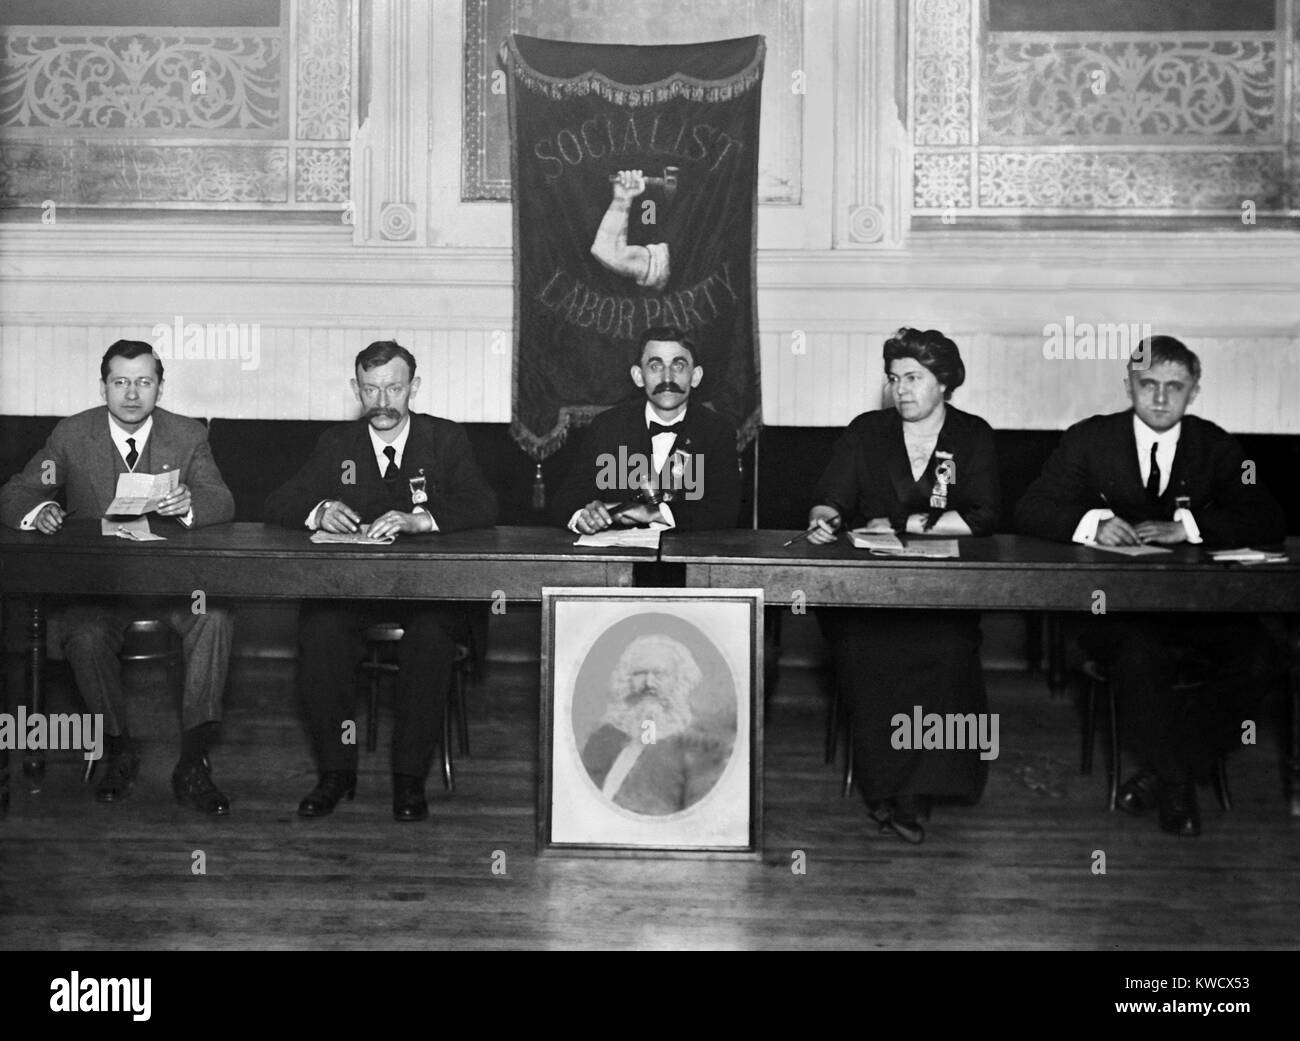 Socialist Labour Party stellte mit einem Porträt von Karl Marx. New York City, C. 1910. L-R: Paul Augustinus, John Jürgens, H.J. Poelling, Edith L. Cody, und Albert Schnabel (BSLOC 2017 2 174) Stockfoto